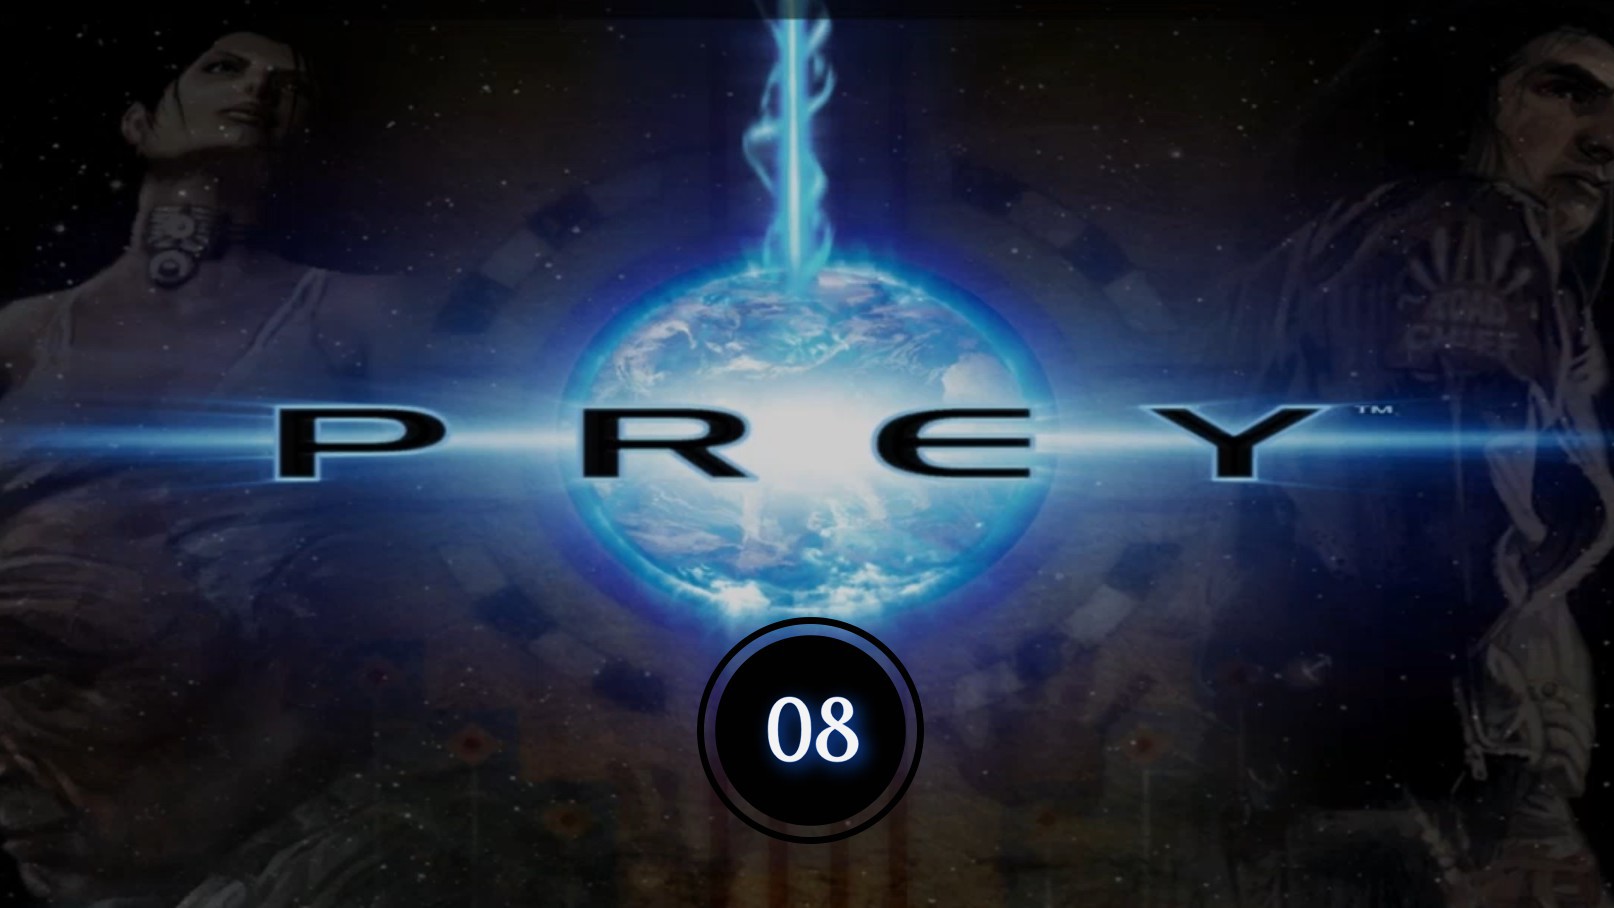 Prey (2006) 08